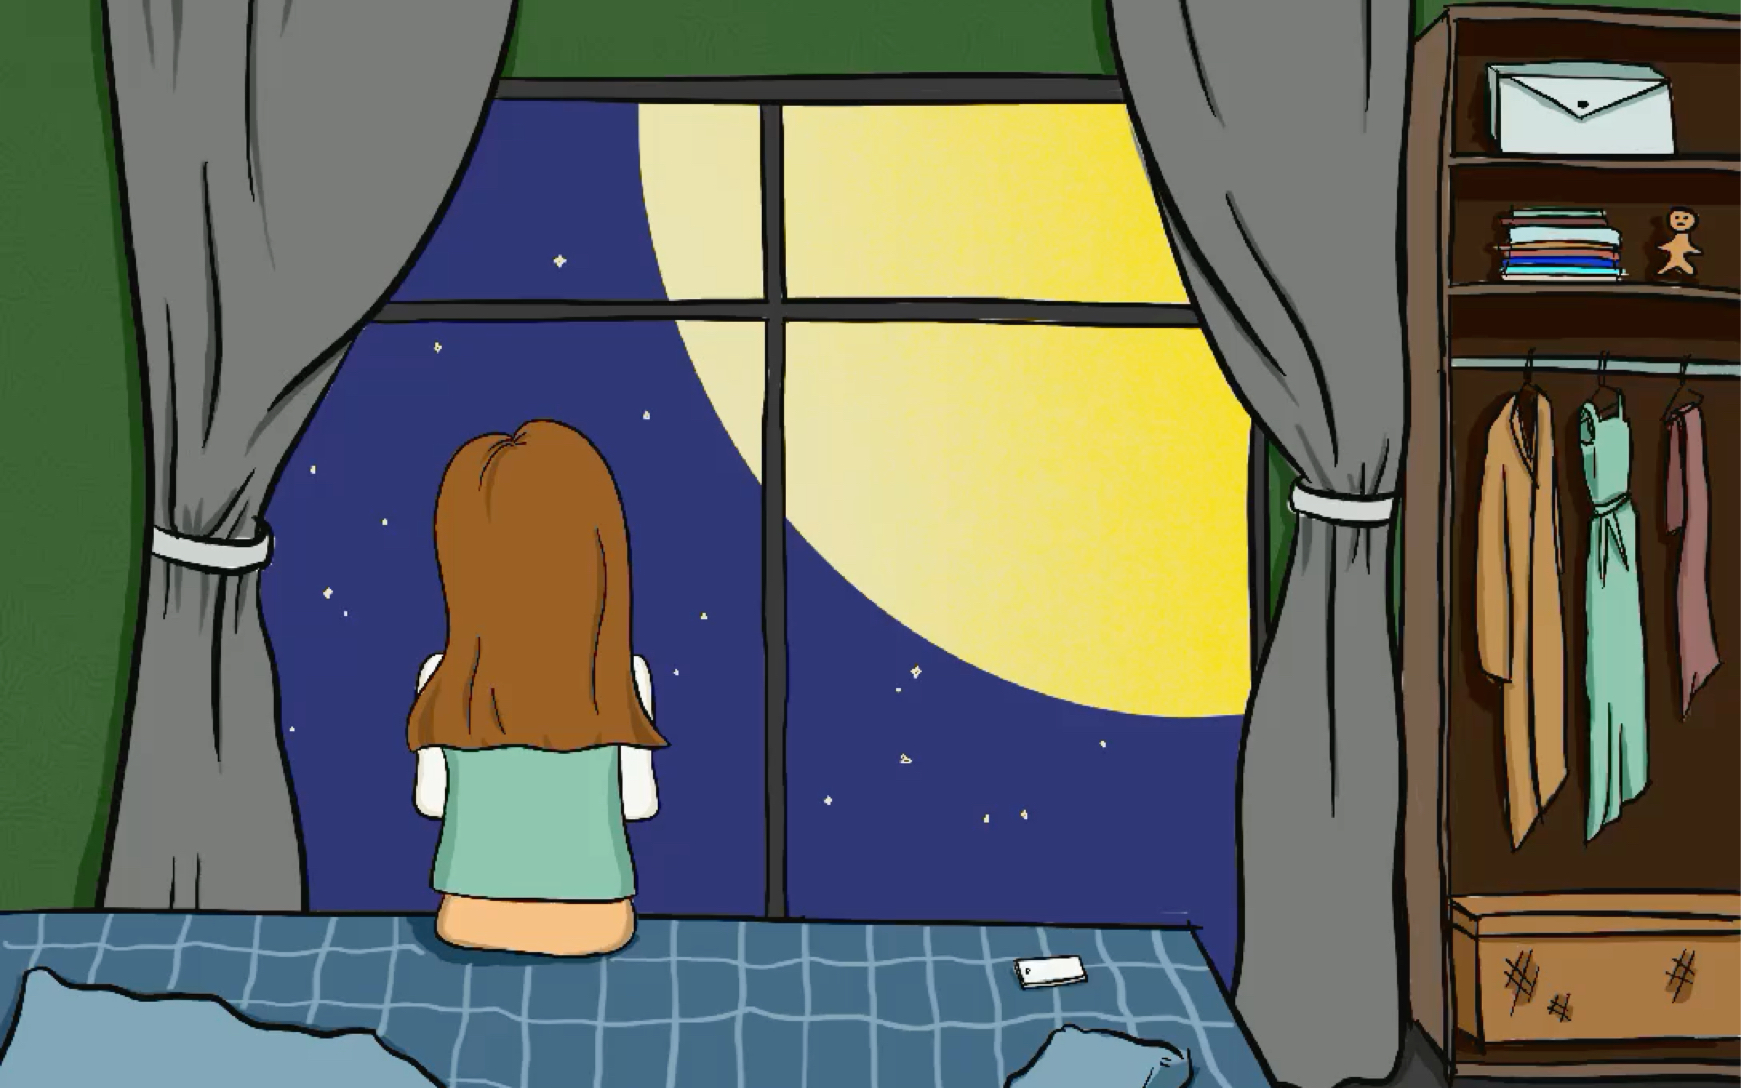 窗前女孩看月亮的图片图片